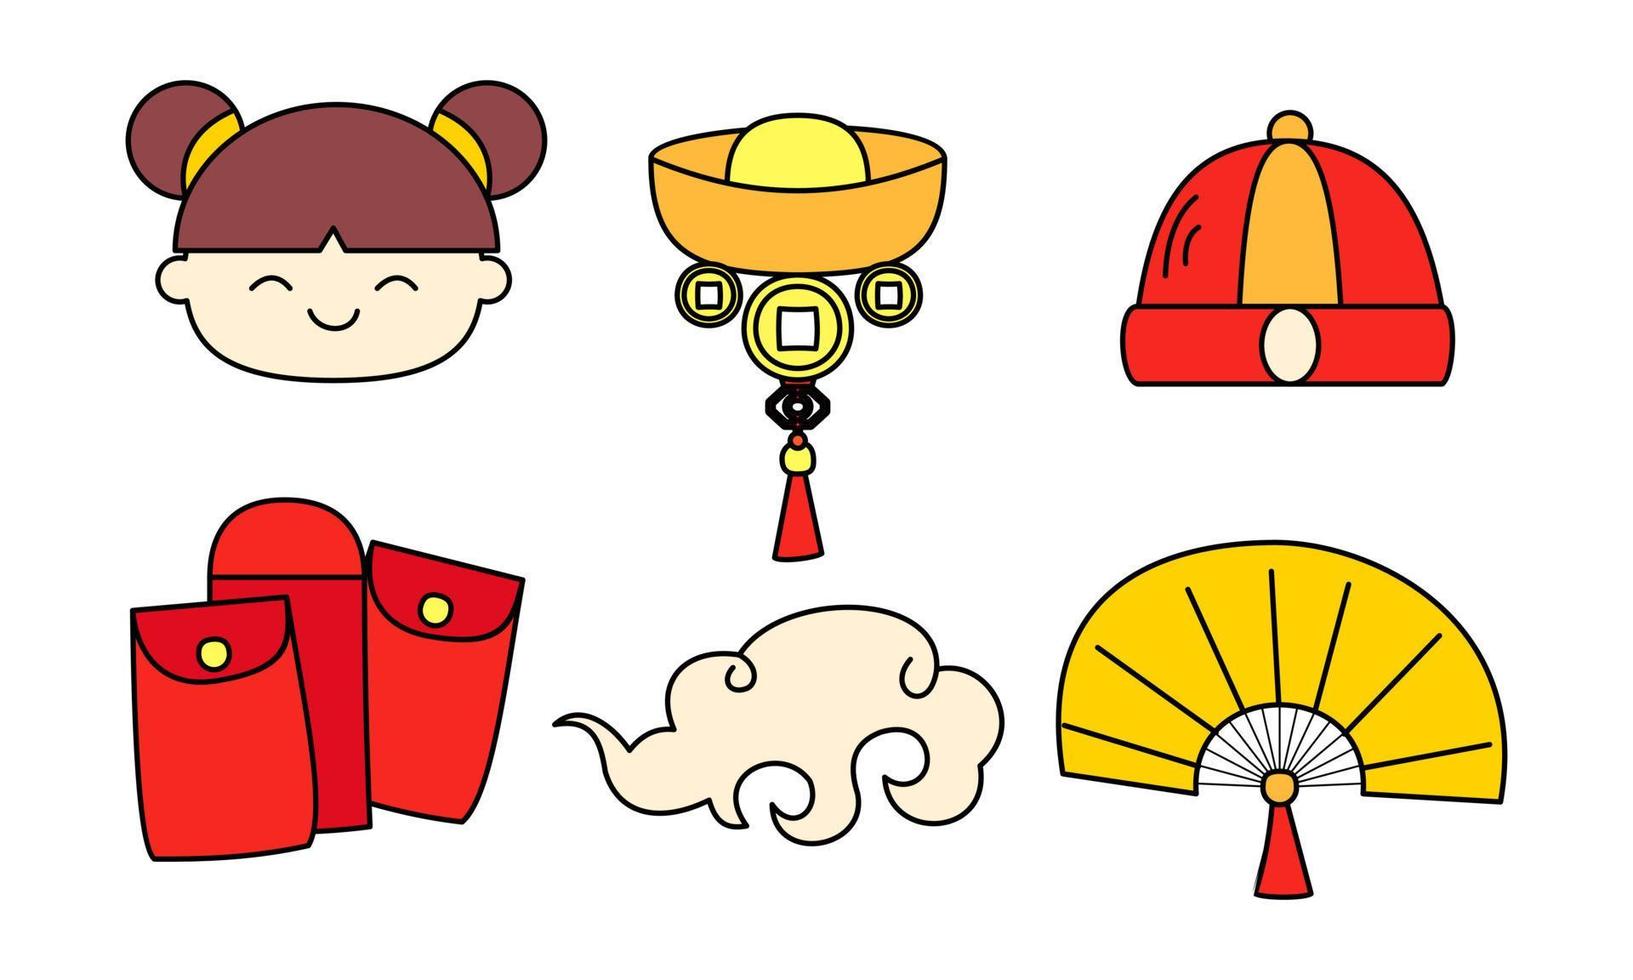 elementos de celebración de boceto de dibujos animados de feliz año nuevo chino vector